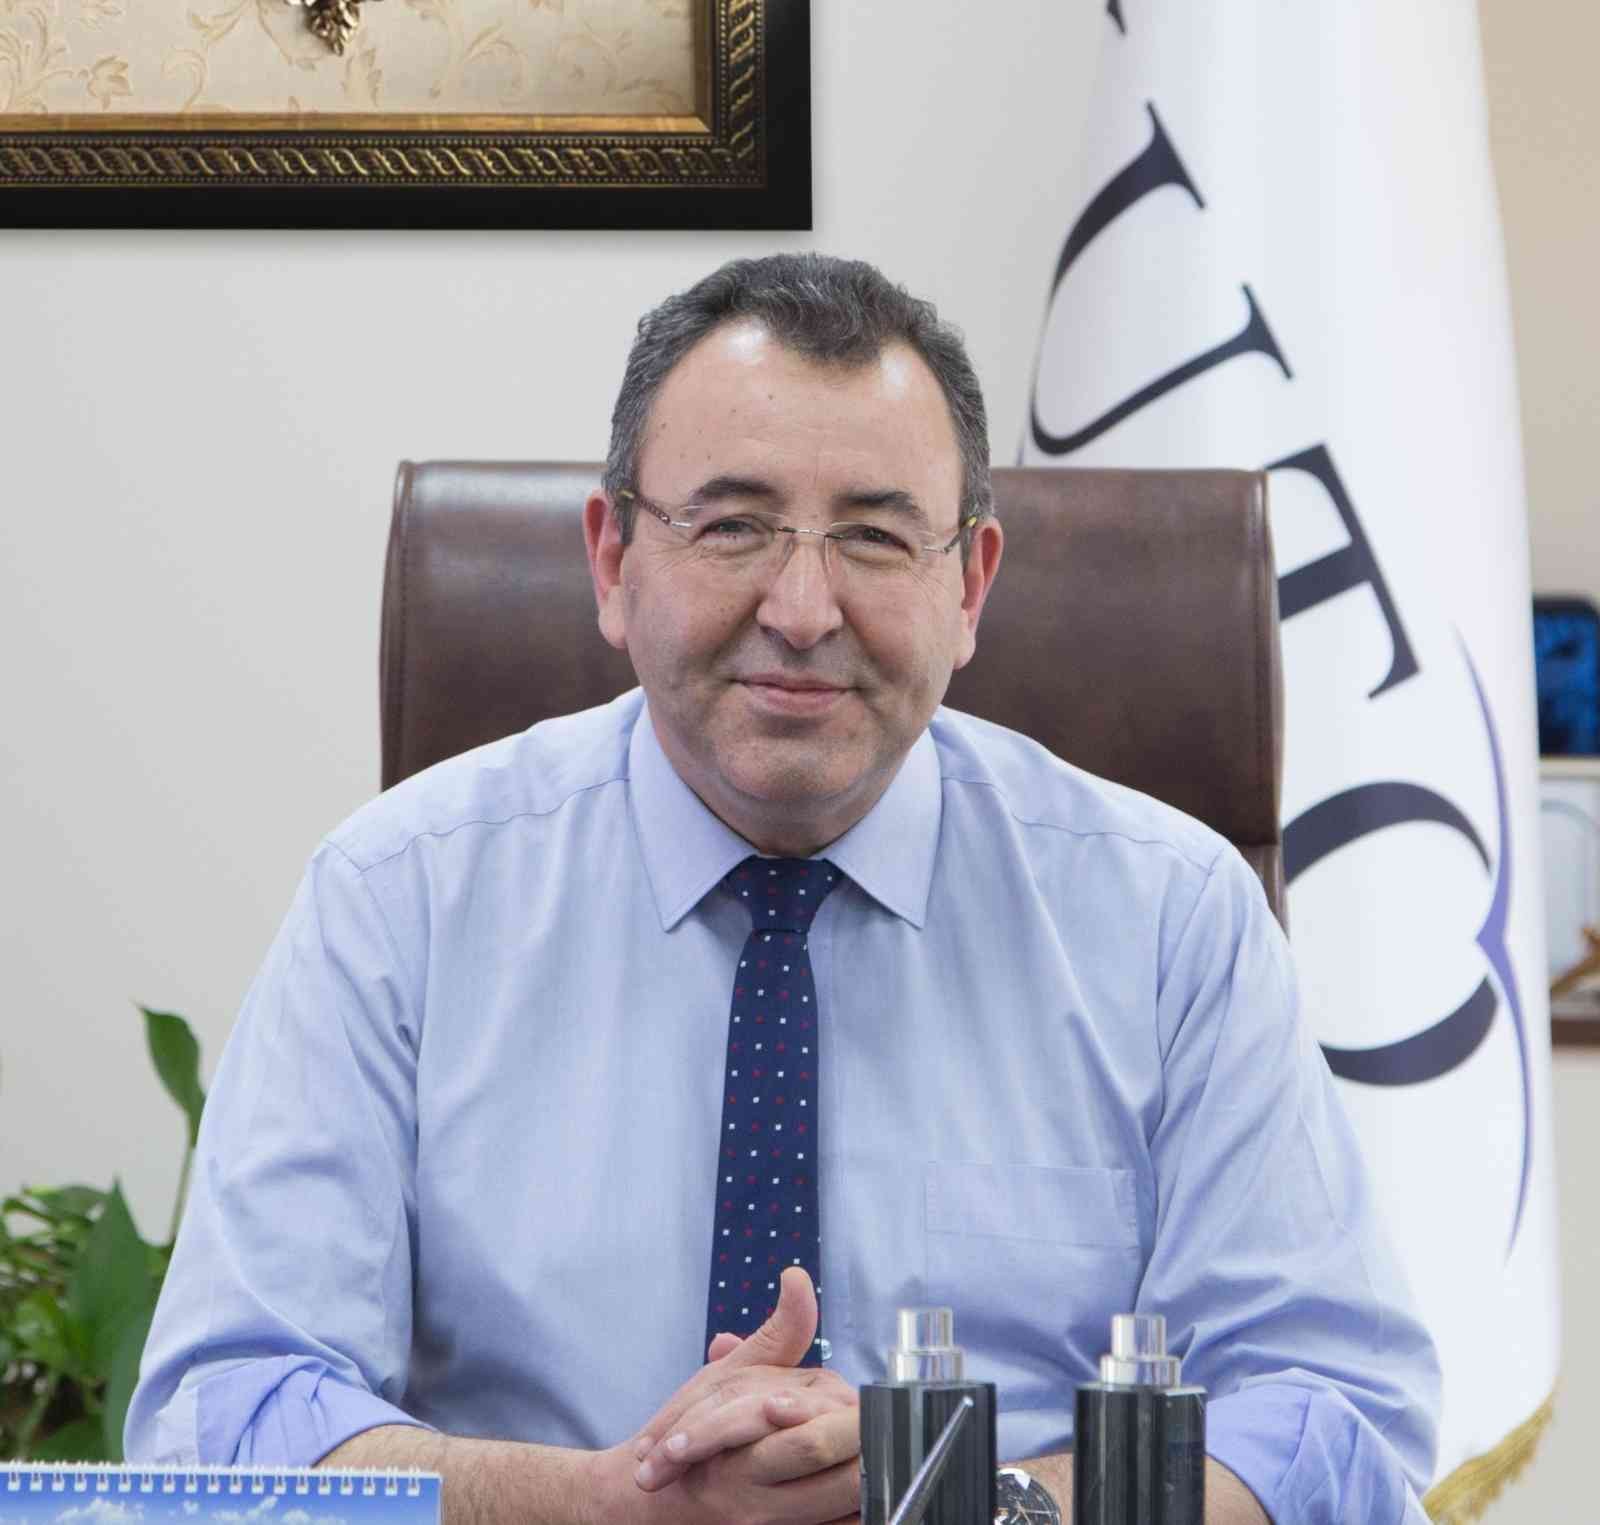 KUTO Başkanı Serdar Akdoğan: “2023’e umutla giriyoruz, ama adımlarımızı temkinli atmalıyız”